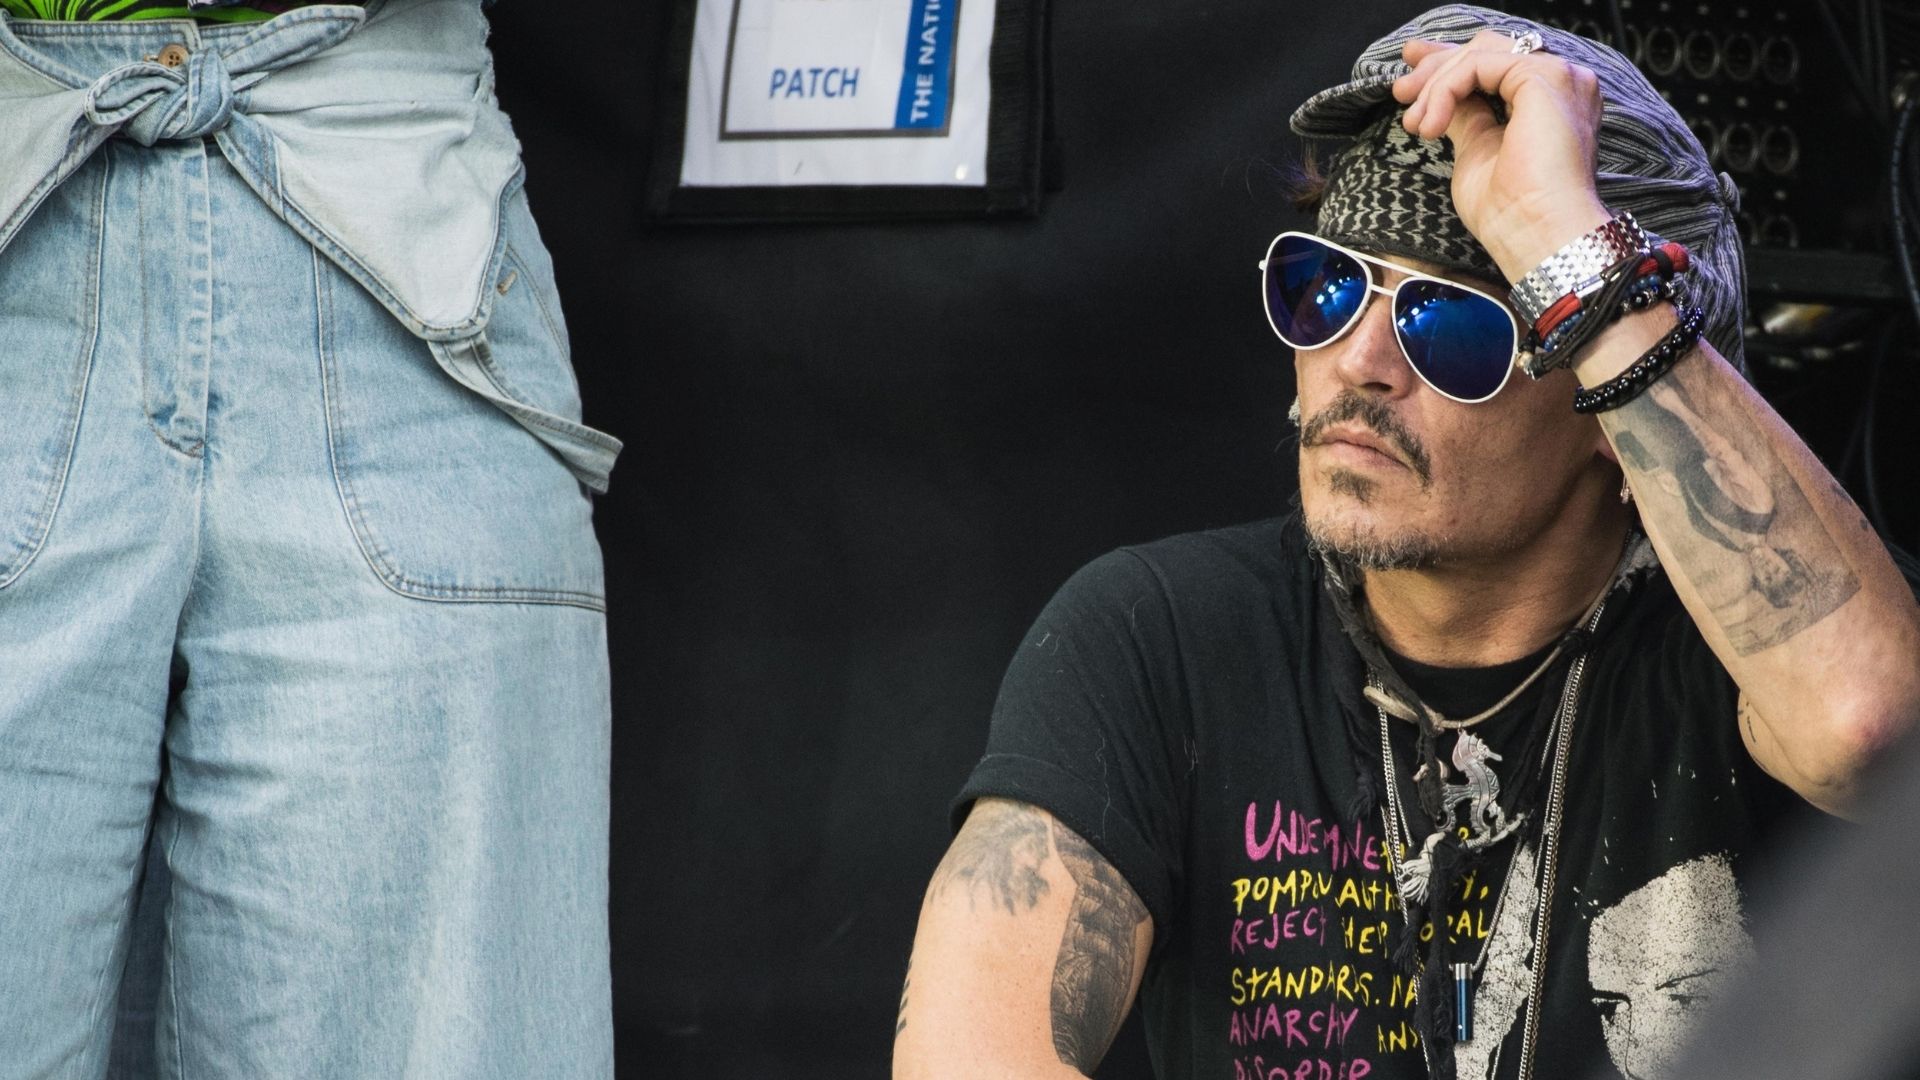 Johnny Depp choca fãs ao aparecer em show após julgamento